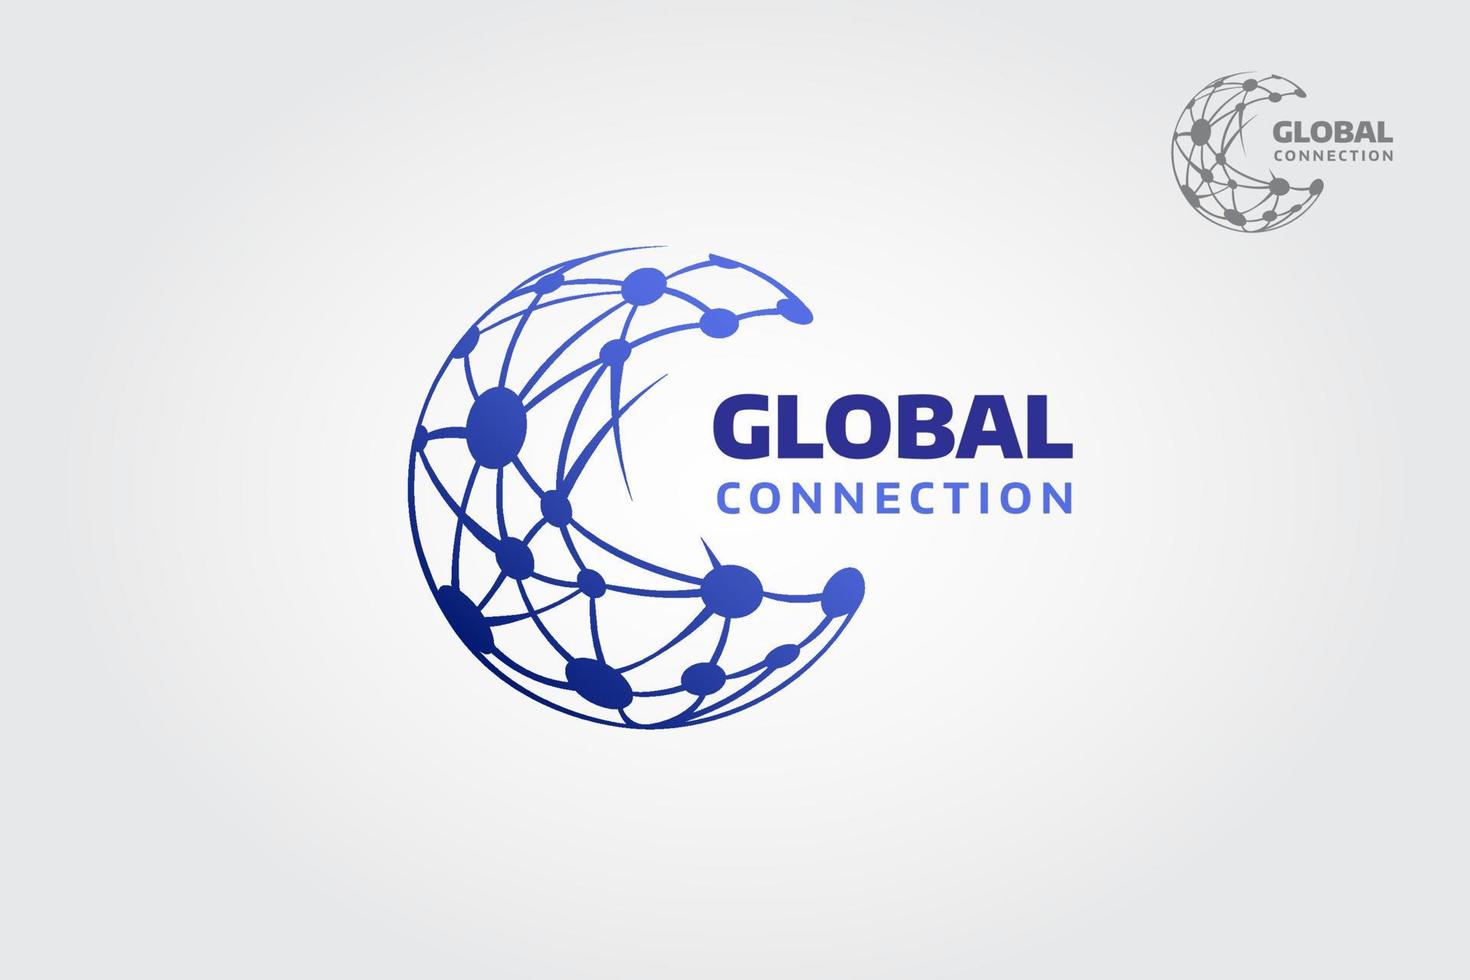 modelo de logotipo de vetor de conexão global. modelo de logotipo de conexão limpo e moderno. pode ser usado por redes sociais e serviços de comunicação, empresas de conexão de telecomunicações, start-up, etc.